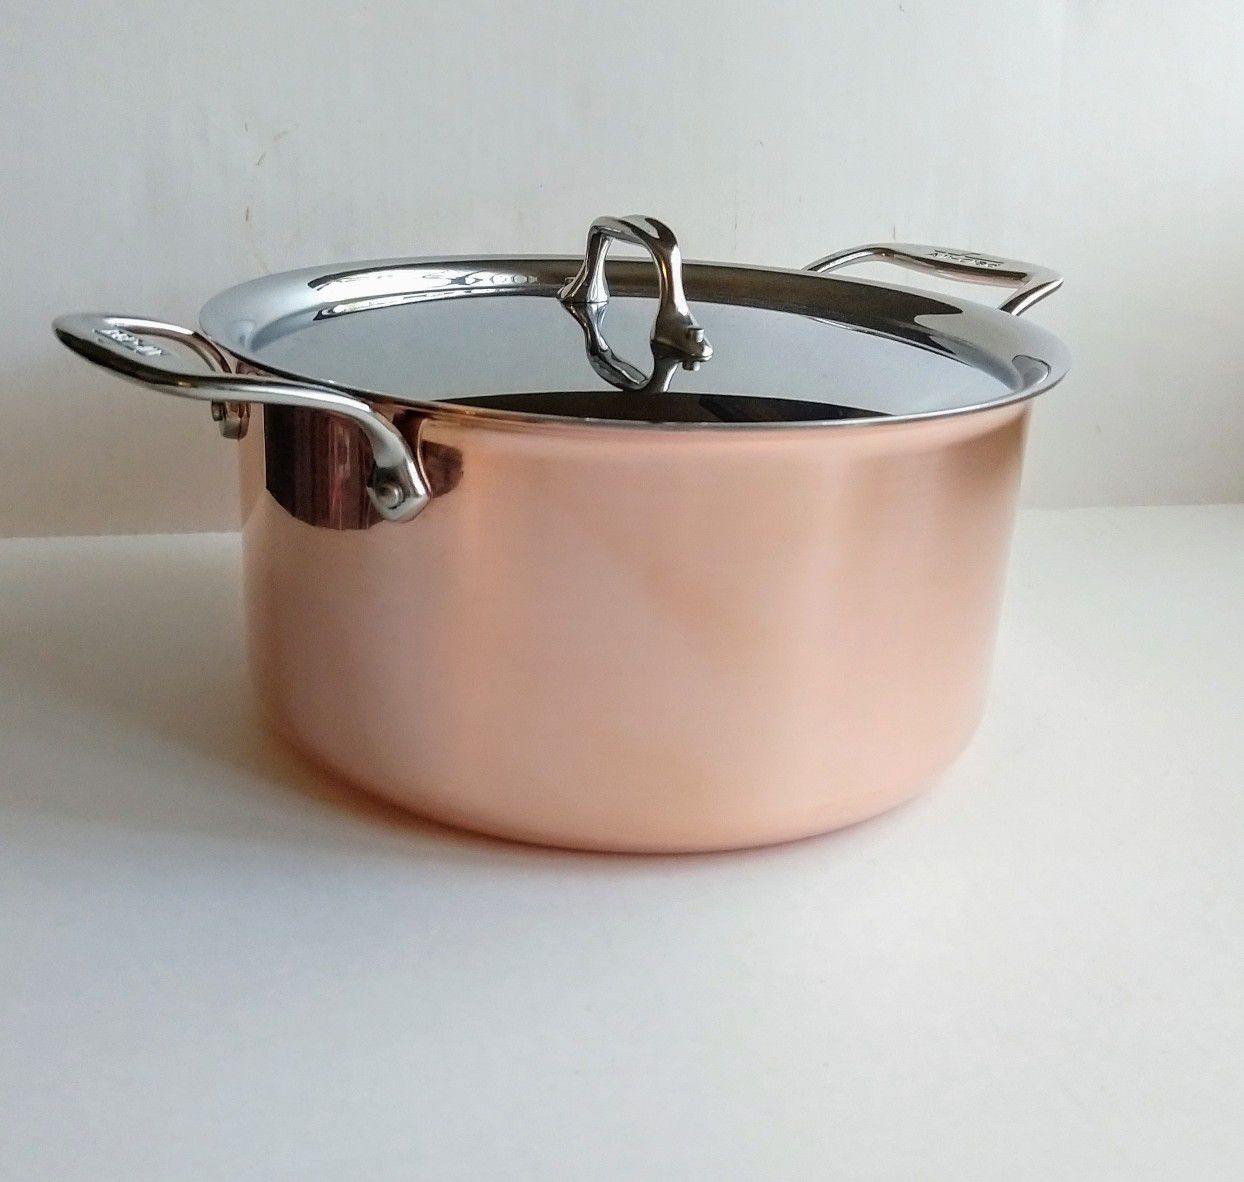 All Clad Copper 8qt Stock Pot With Lid